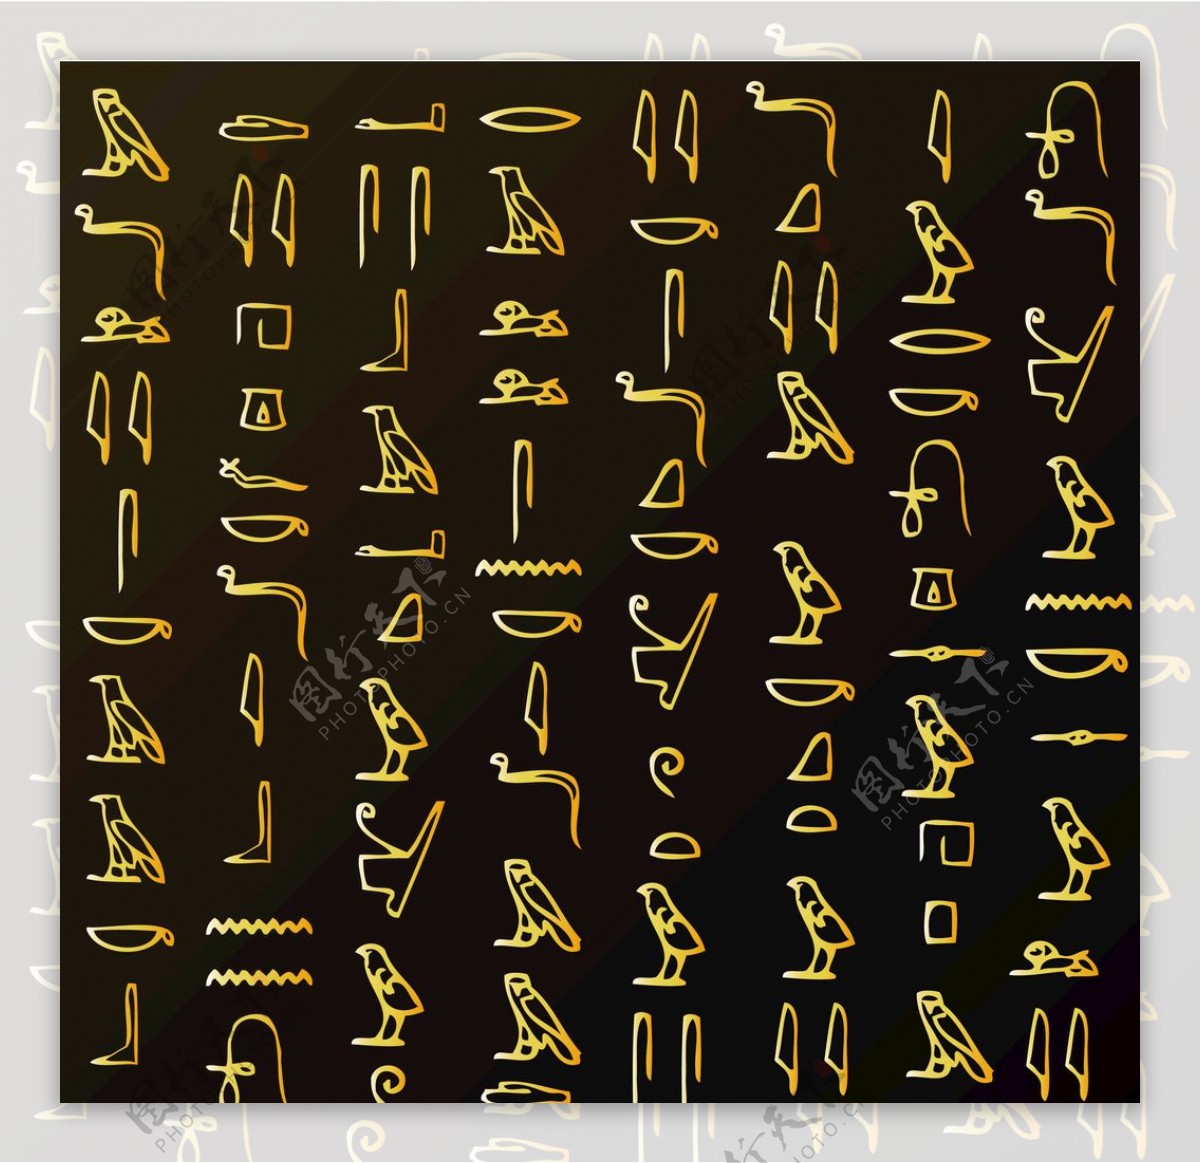 埃及文字